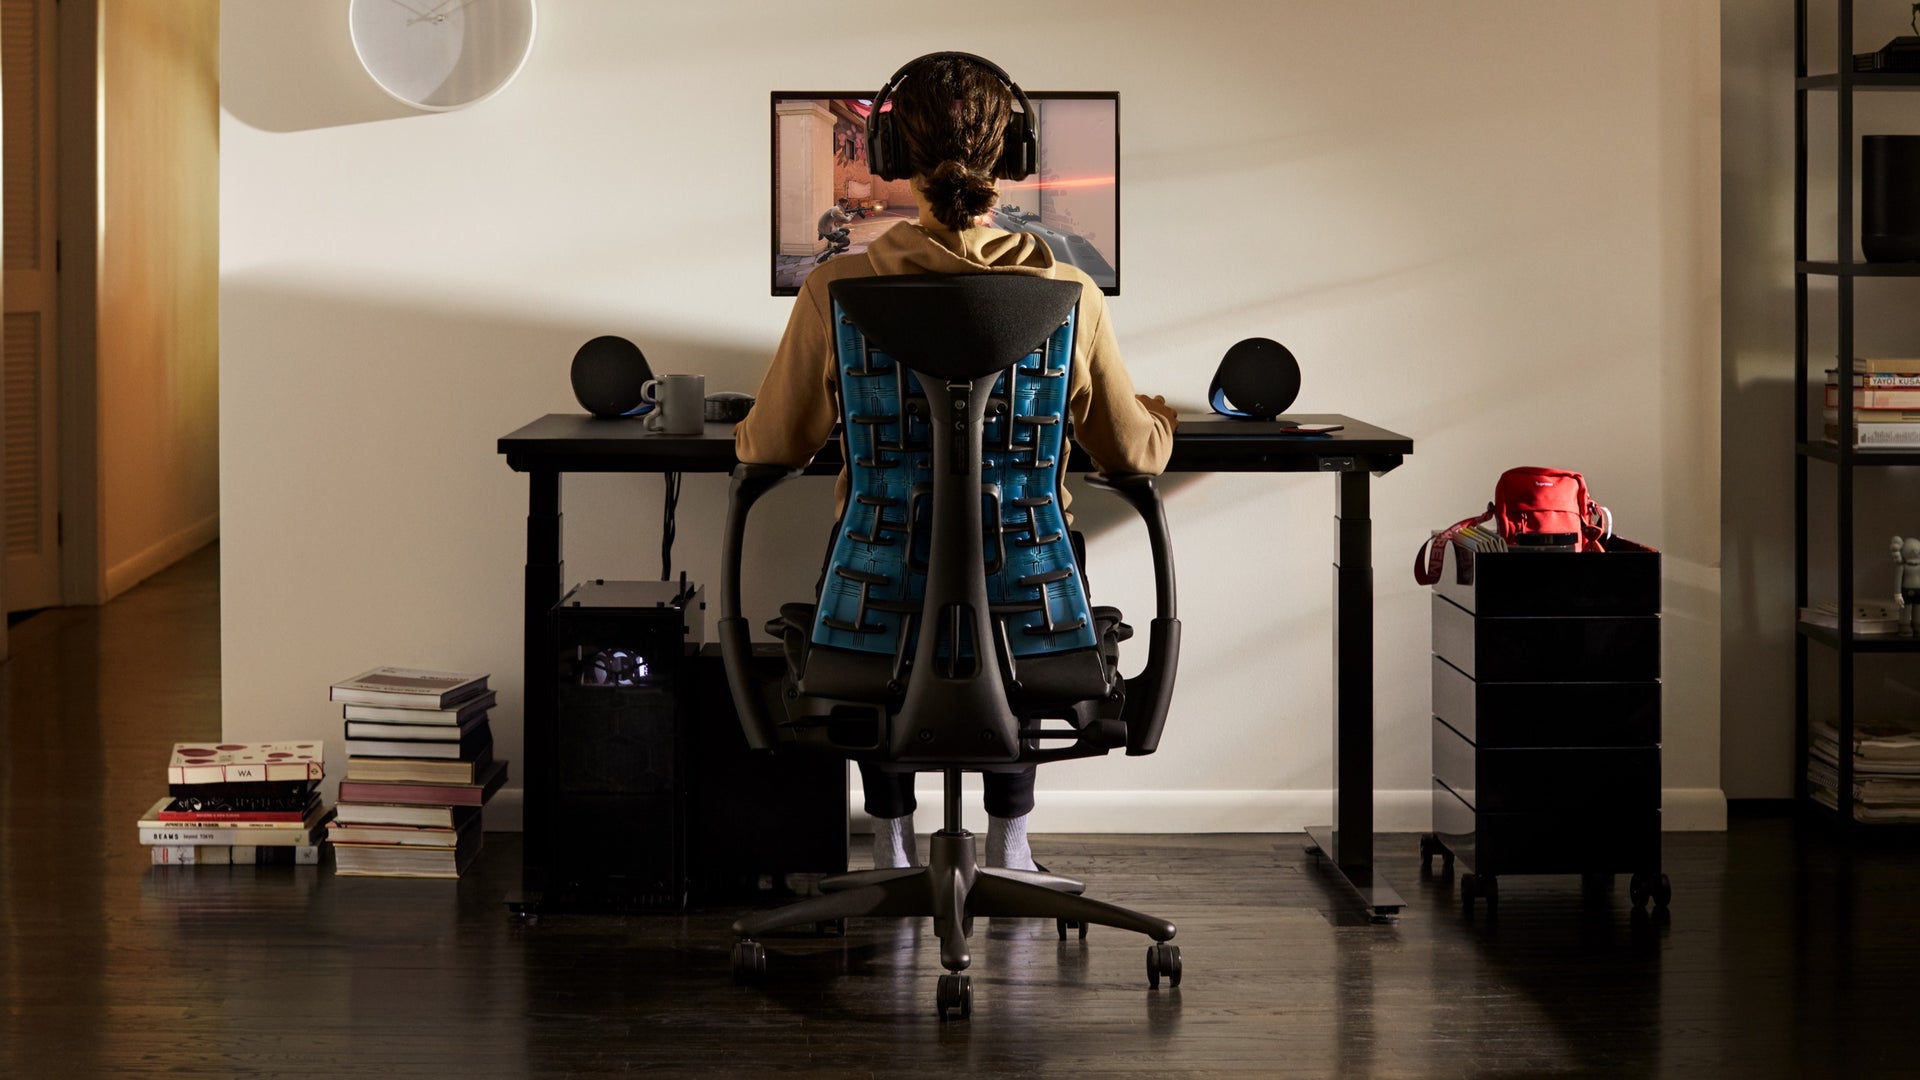 Una persona se sienta en la silla para videojuegos Embody y mira un monitor unido al brazo articulado para monitor Ollin, que se apoya sobre la mesa para videojuegos en un entorno residencial.